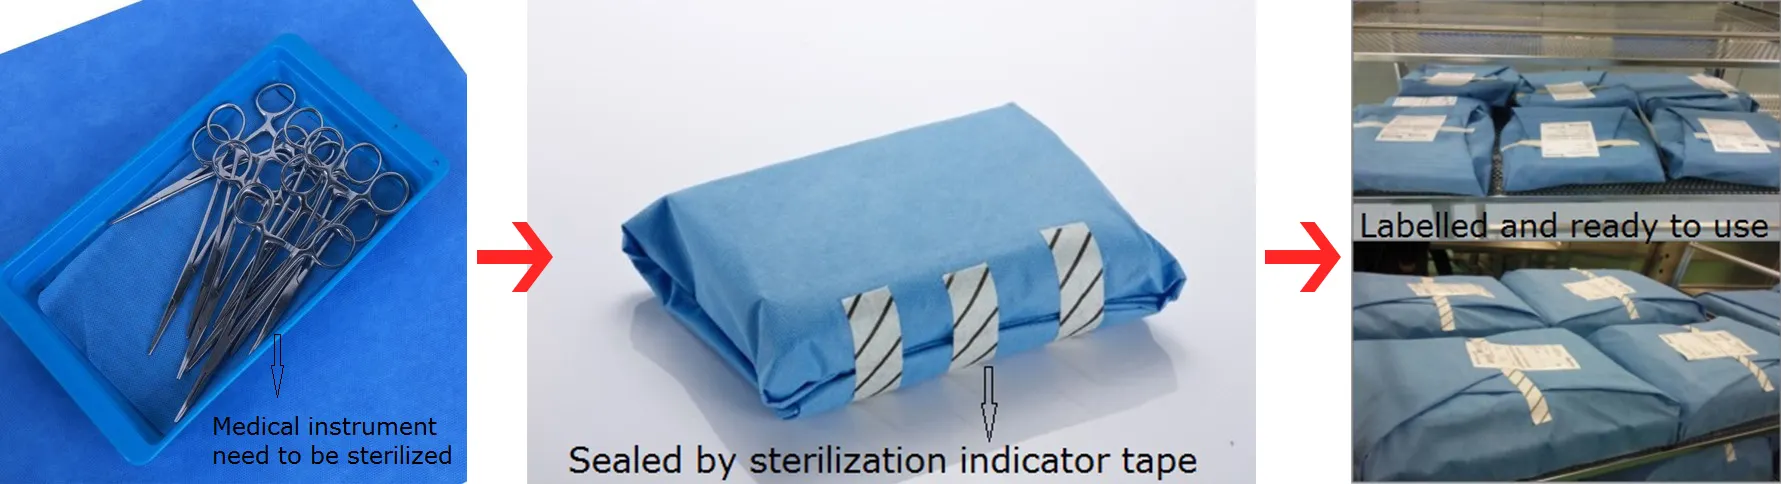 Stérilisation à L'OXYDE D'ÉTHYLÈNE SMS/SMMS non tissé RSE emballage de stérilisation